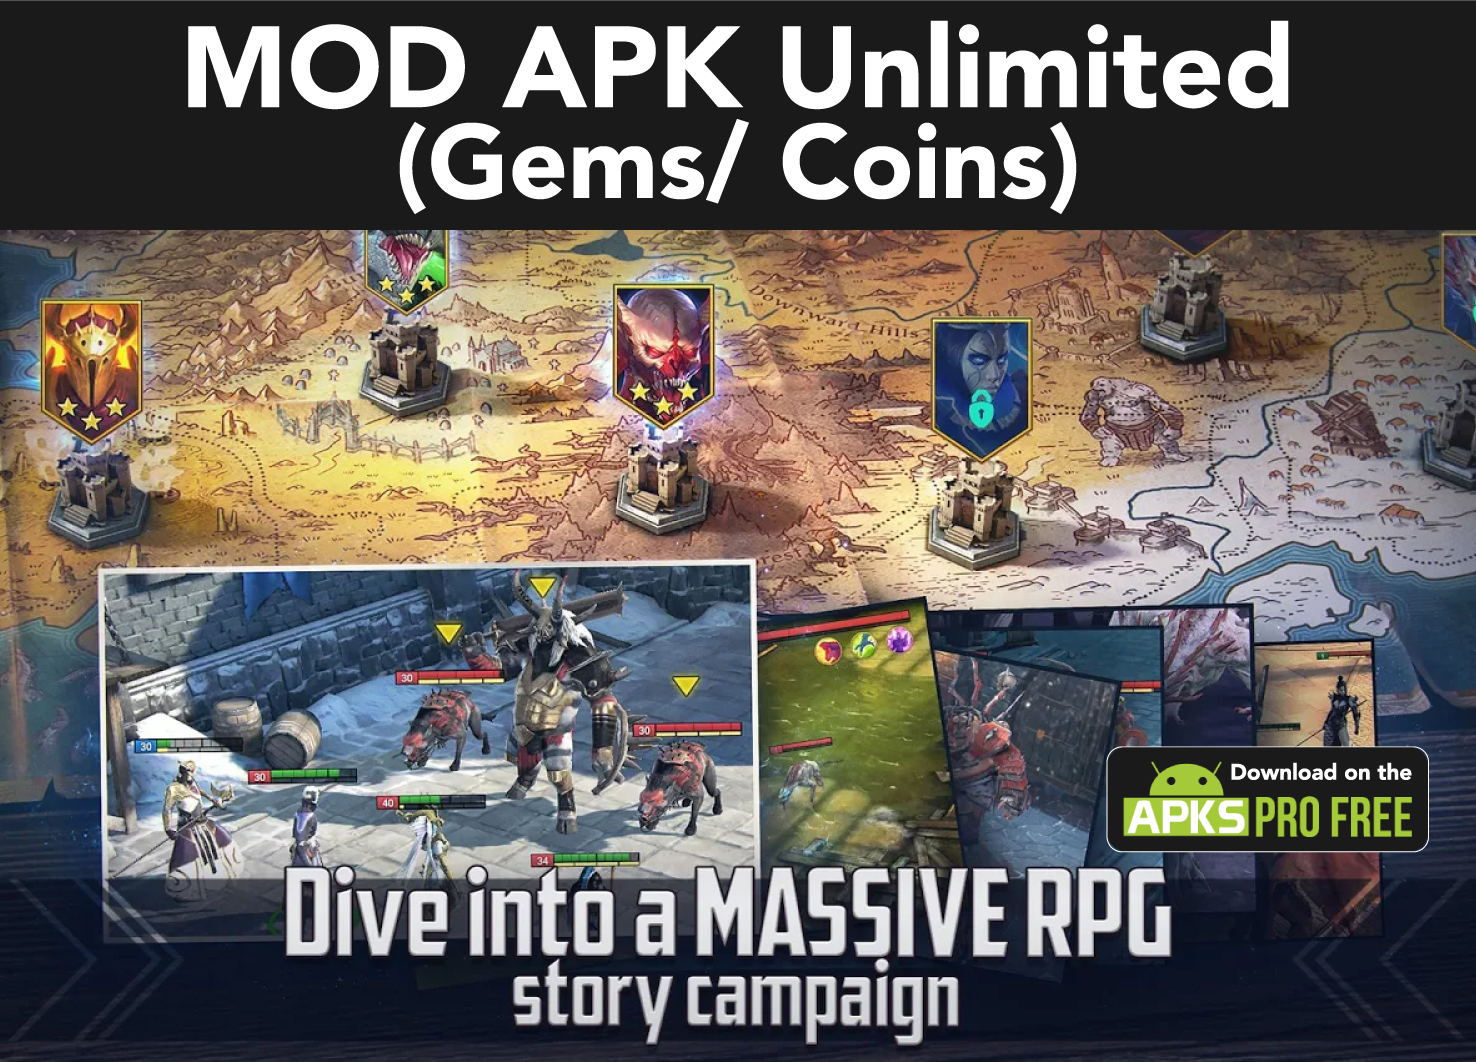 raid shadow legends mod apk (unlimited money and gems)